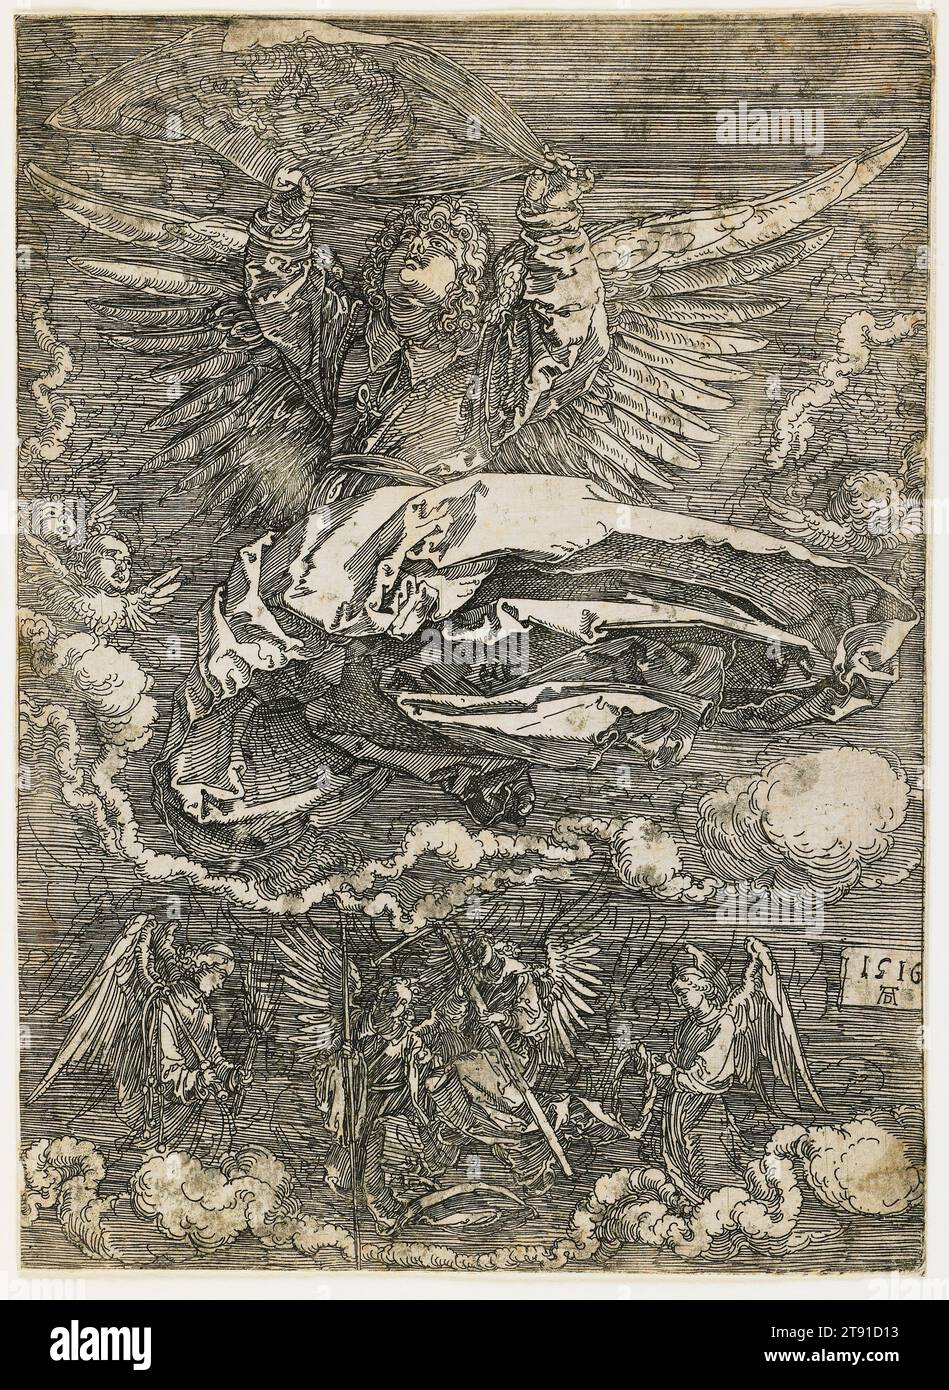 Das Sudarium von One Angel, 1516, Albrecht Dürer, 1471–1528, 1/4 x 3/16 Zoll (18,42 x 13,18 cm) (Platte), Ätzen auf Eisen, Deutschland, 16. Jahrhundert, dieser ungewöhnliche Druck, während Albrecht Dürer mit der Lockerung der geätzten Linie experimentierte, fängt er die zitternden, visionären Staatsmenschen ein, die durch Gebet zu erreichen suchten. Das Gesicht Christi ist auf dem wehenden Sudarium kaum zu erkennen, das der Legende nach eingeprägt war, als Veronica Christi Stirn abwischte. Stockfoto